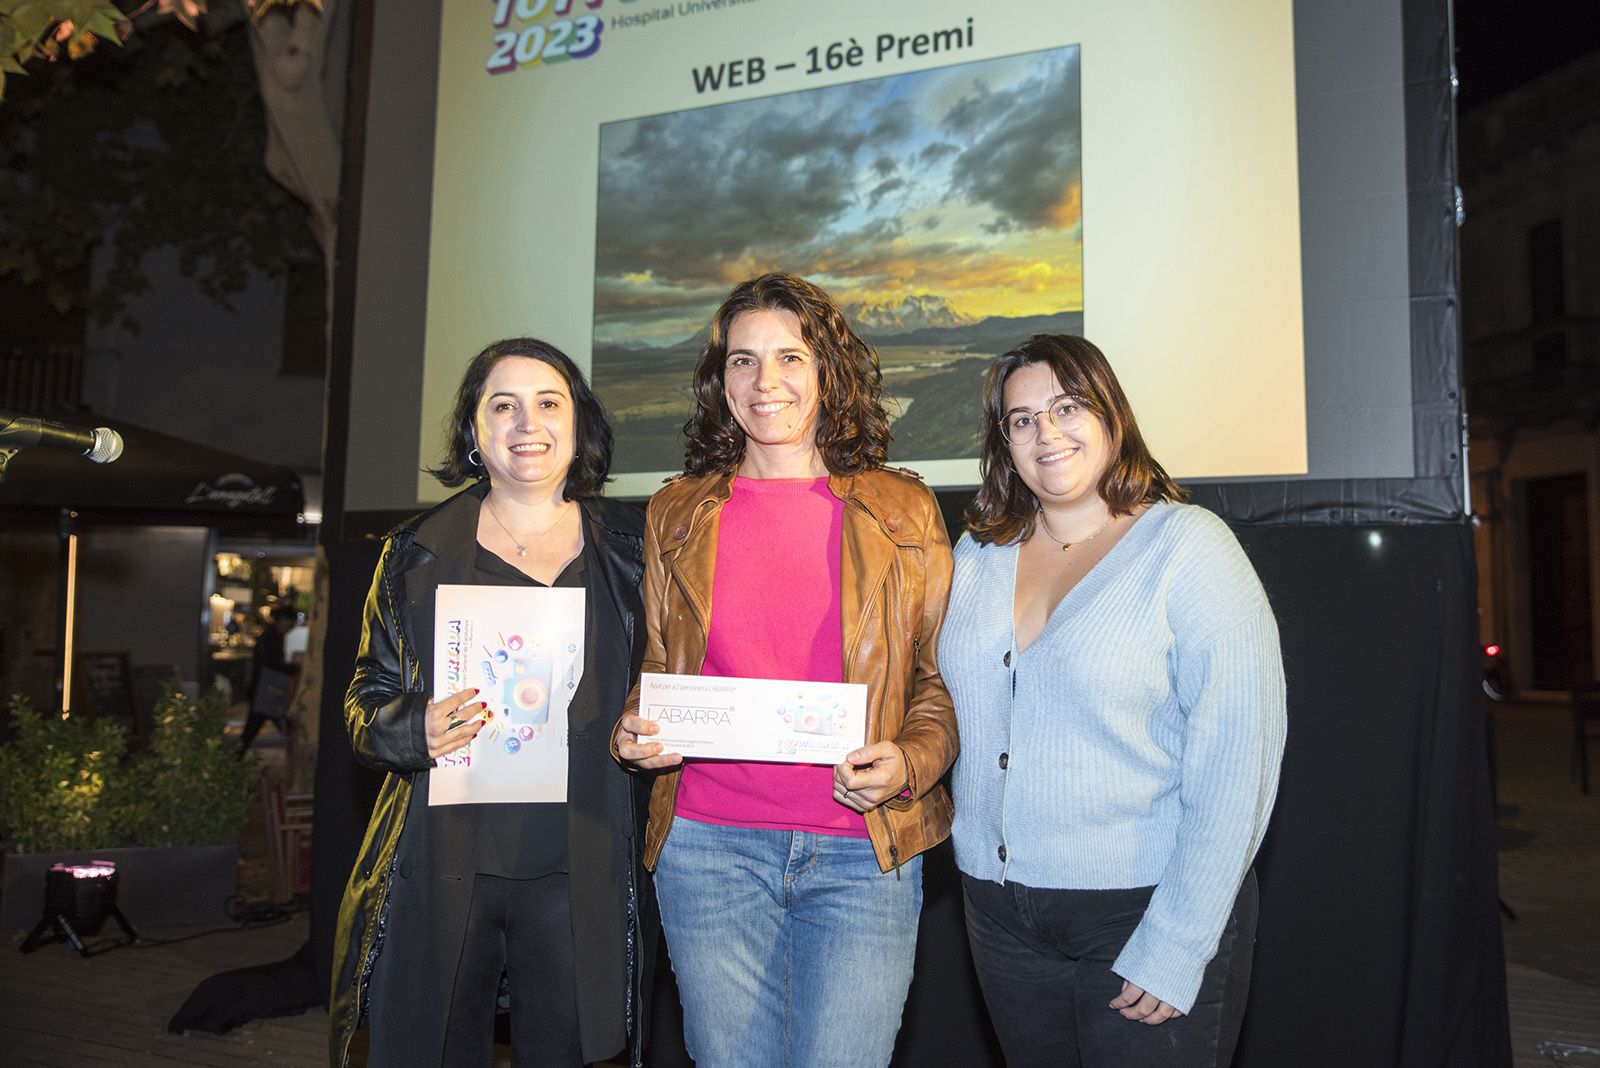 16è premi categoria web: Bellesa de la pau · P.N Torres del Paine, Xile de Gemma Garsaball Granados. FOTO: Bernat Millet.